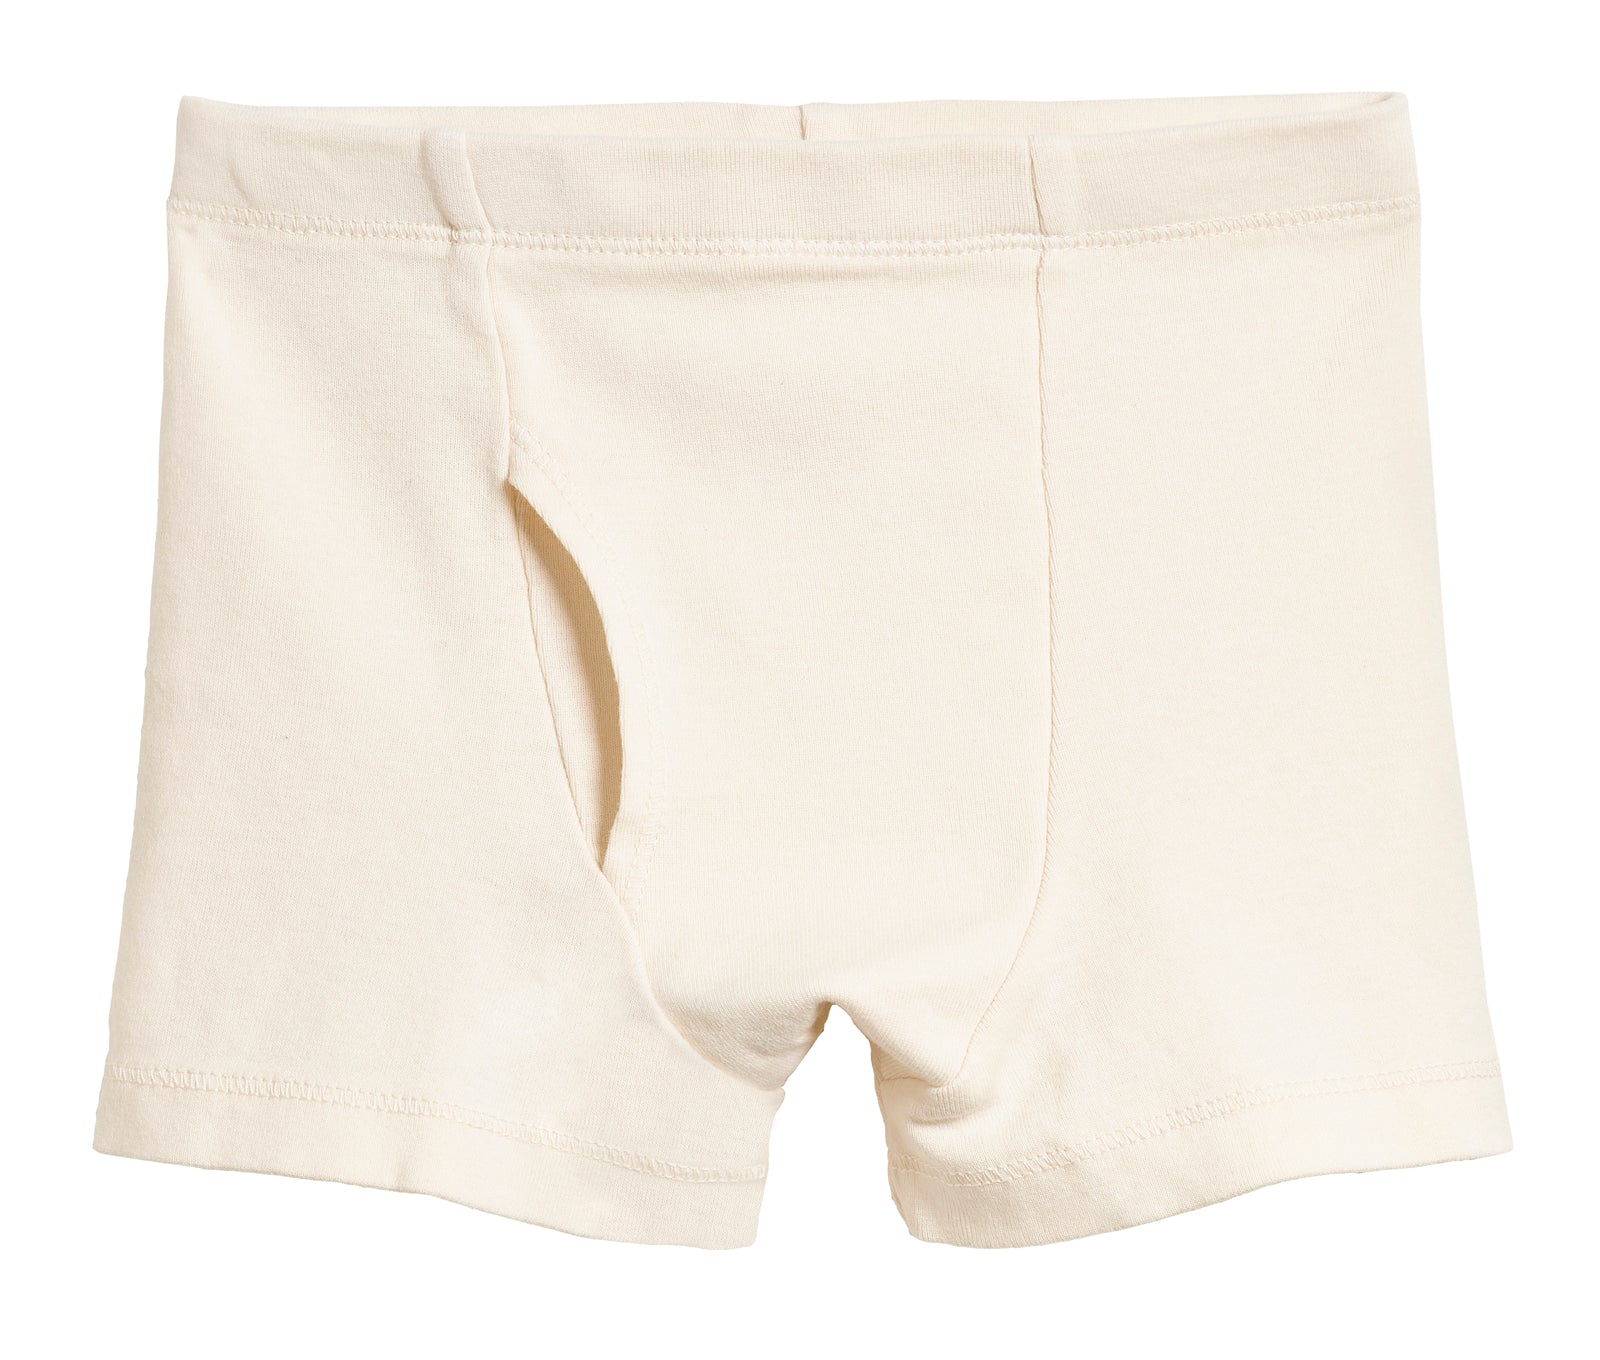 Kids Children Boys Underwear Set Cute Print Briefs Shorts Cotton Underwear  Trunks 3PCS Baby Girl Panties (Blue, 12-18 Months)